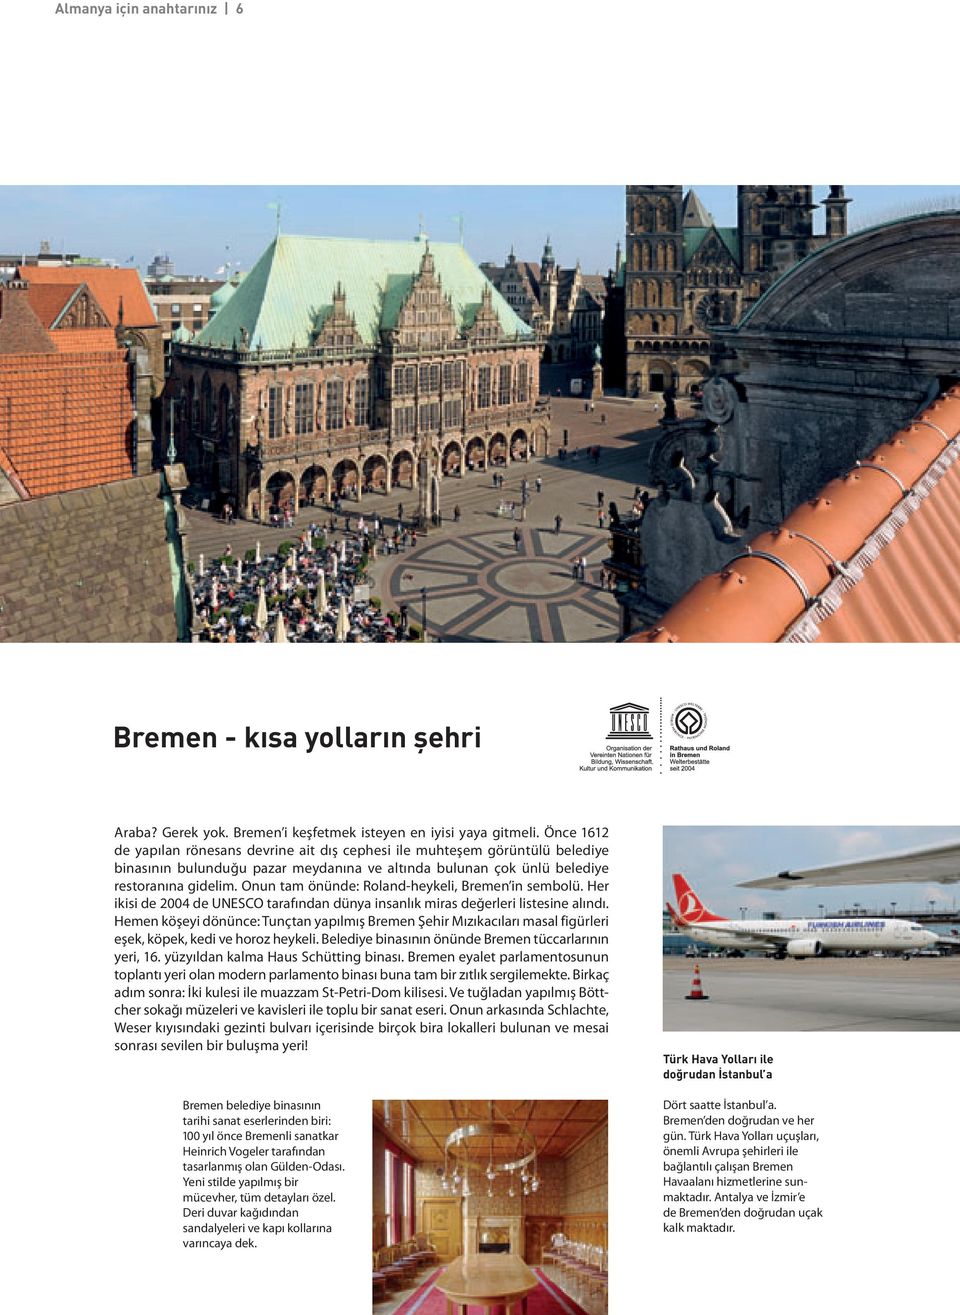 Onun tam önünde: Roland-heykeli, Bremen in sembolü. Her ikisi de 2004 de UNESCO tarafından dünya insanlık miras değerleri listesine alındı.